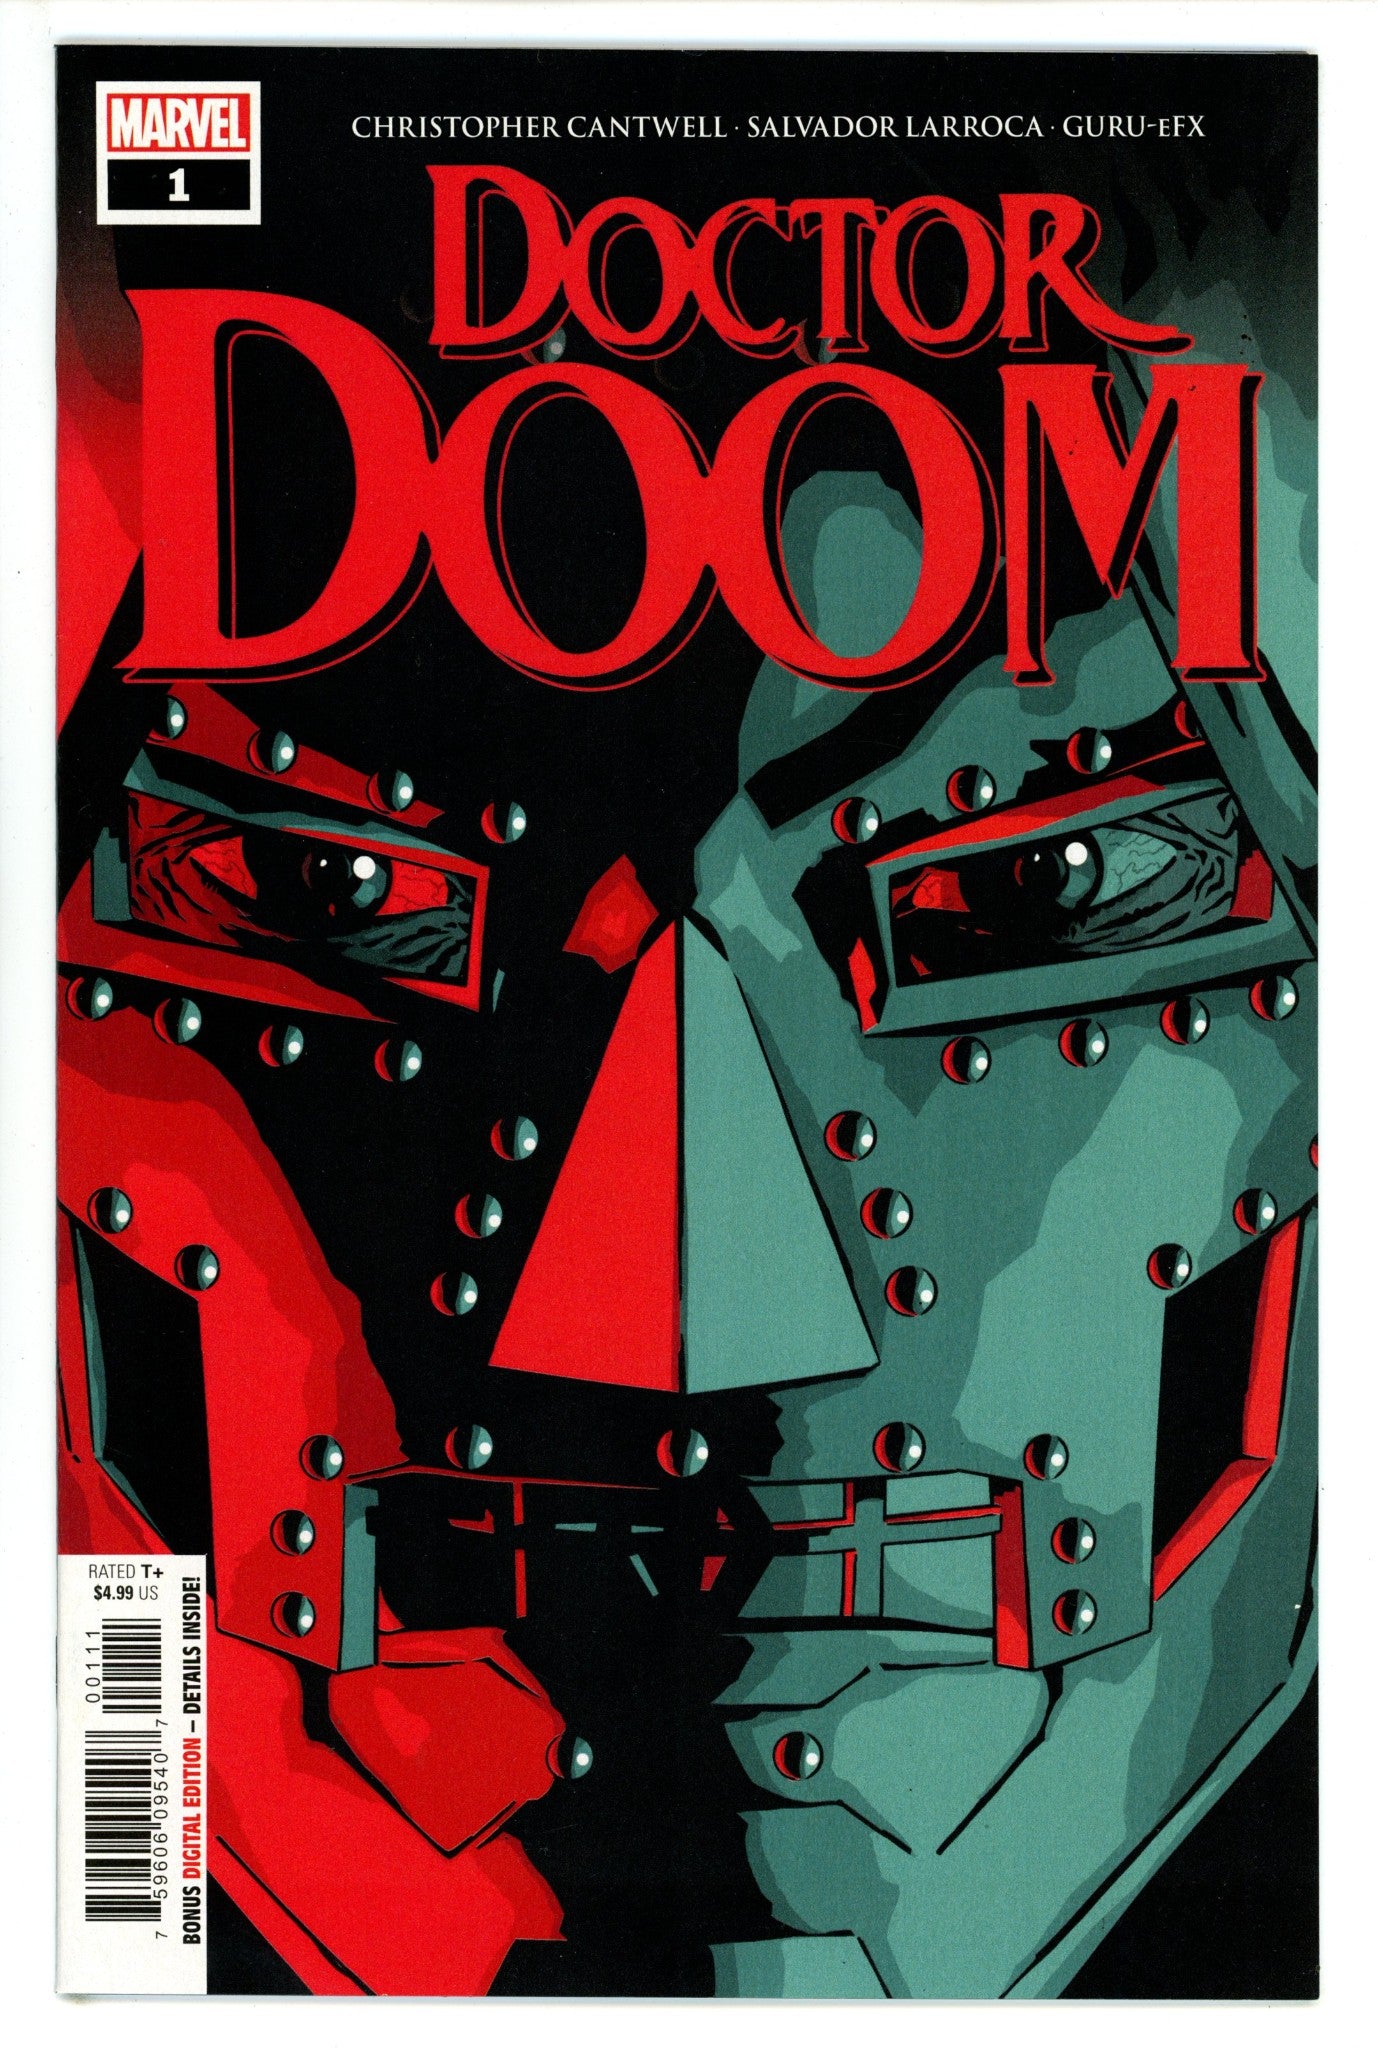 Doctor Doom Vol 1 1 NM (9.4) (2019)